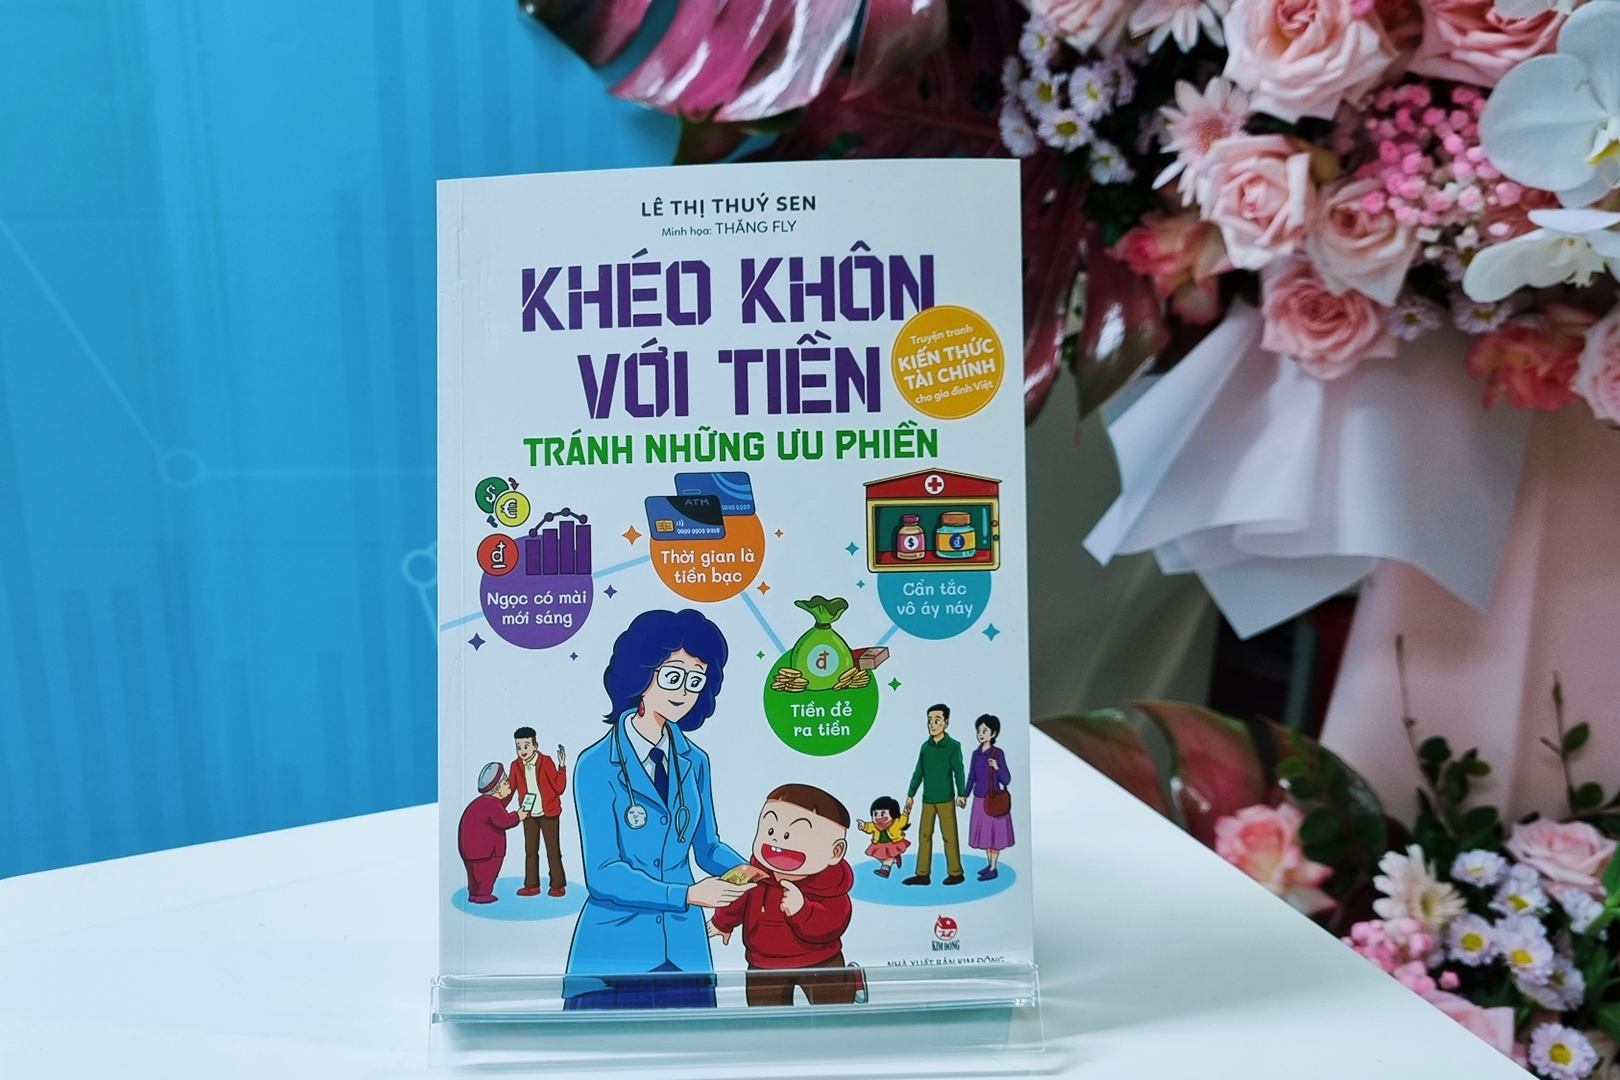 Khéo khôn với tiền - Tránh những ưu phiền: Cuốn sách về tài chính và đầu tư đầu tiên của Việt Nam - 4